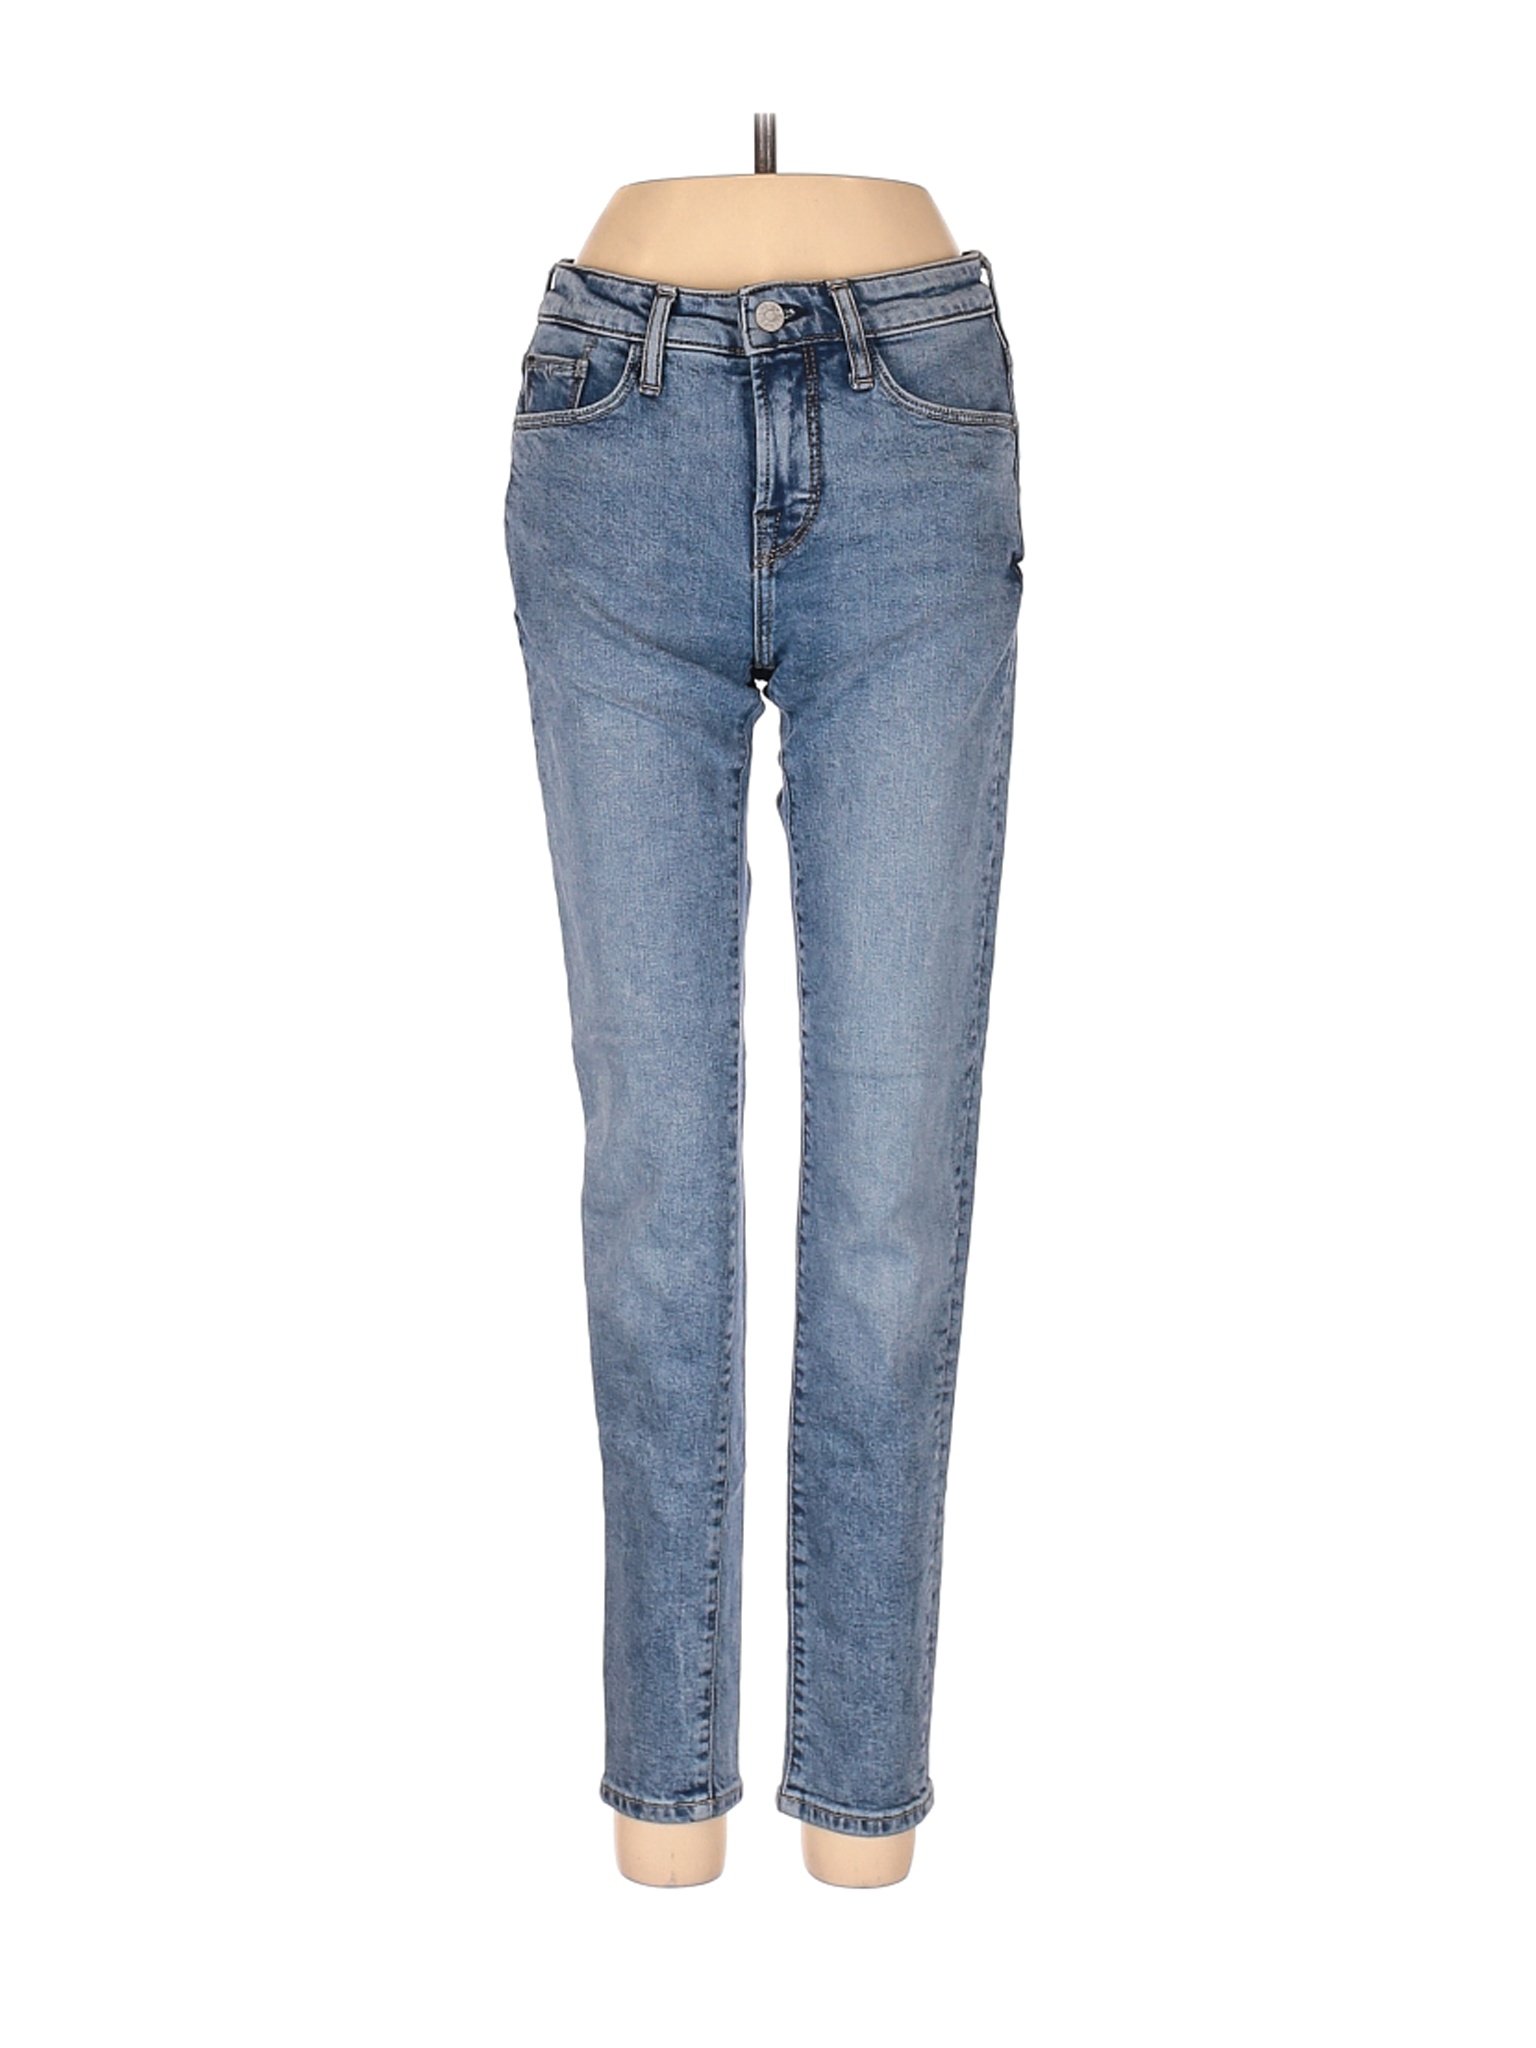 Assorted Brands Women Blue Jeans 24W | eBay